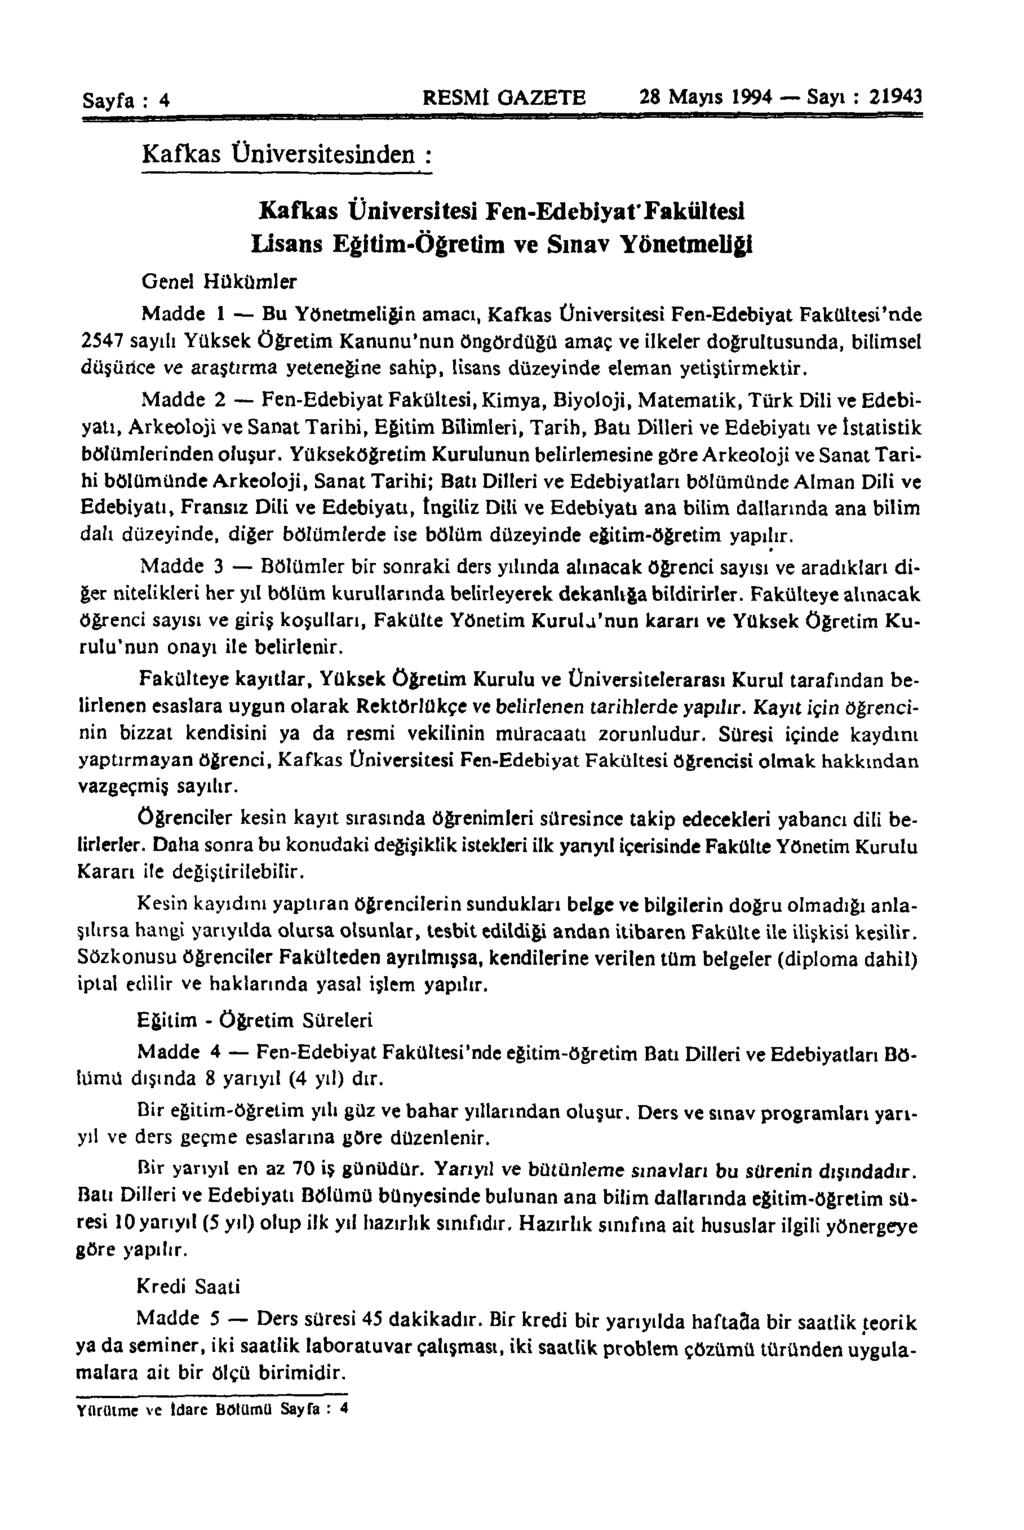 Sayfa : 4 RESMÎ GAZETE 28 Mayıs 1994 Sayı : 21943 Kafkas Üniversitesinden : Genel Hükümler Kafkas Üniversitesi Fen-Edebiyaf Fakültesi Lisans Eğitim-öğretim ve Sınav Yönetmeliği Madde 1 Bu